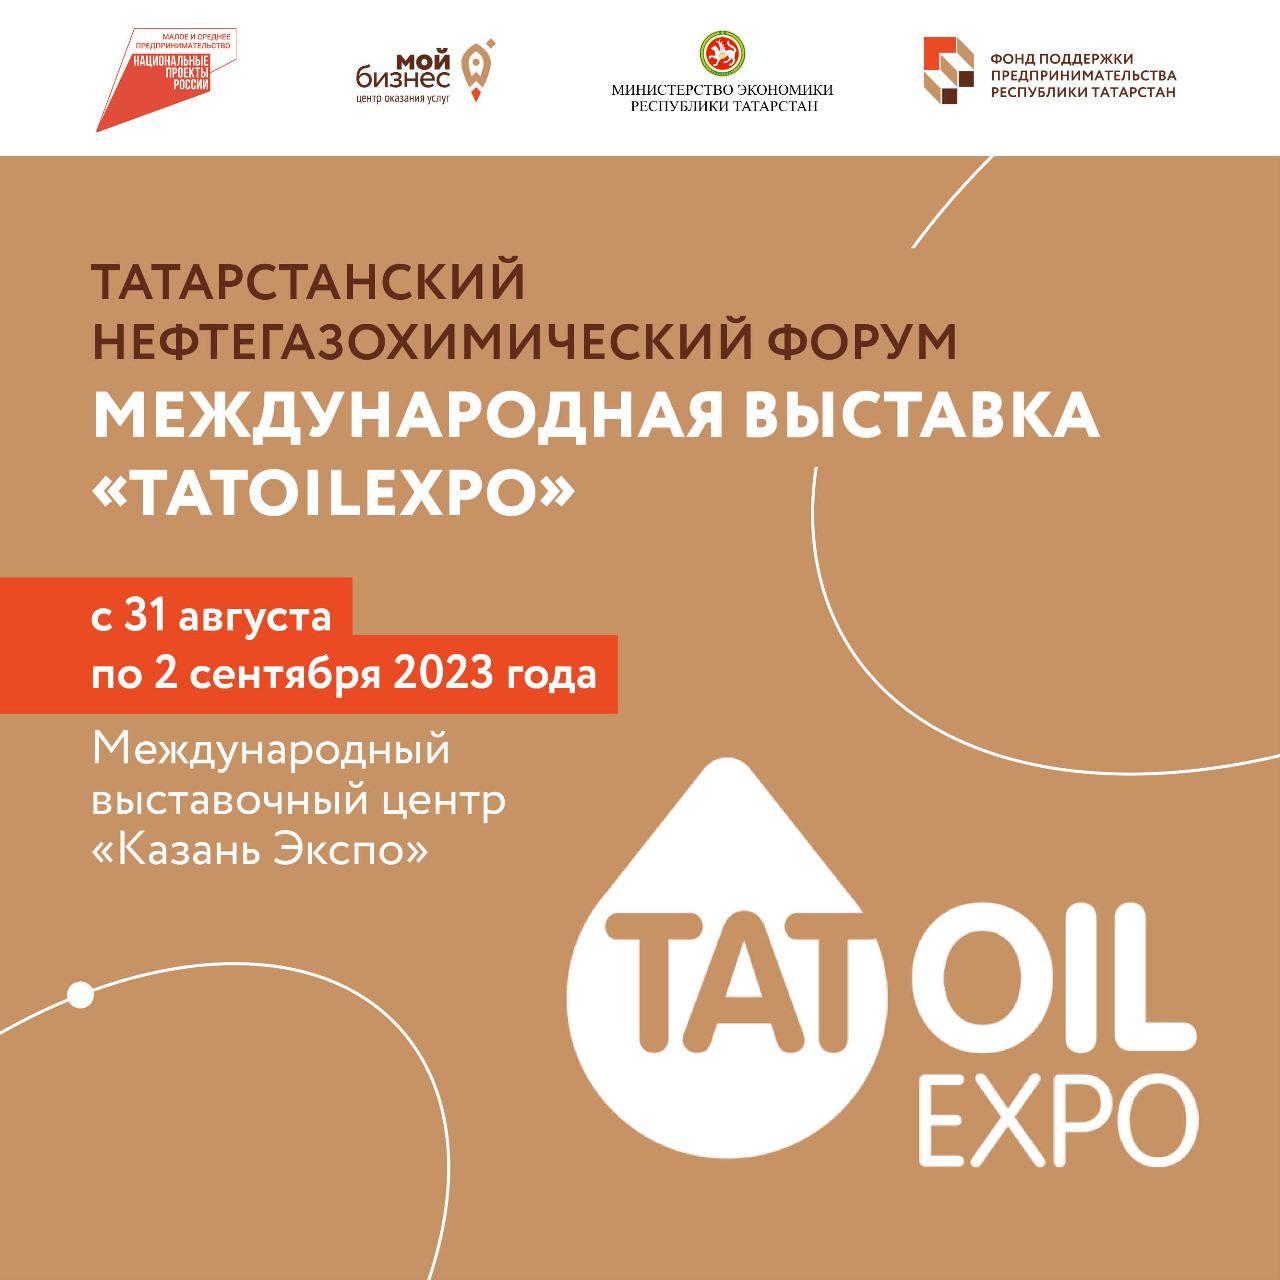 В период с 31 августа по 2 сентября 2023 года в Международном выставочном центре «Казань Экспо» состоится Татарстанский нефтегазохимический форум, посвященный 80-летию нефтедобычи в республике. В рамках Форума также запланирована Международная выставка «TatOilExpo».